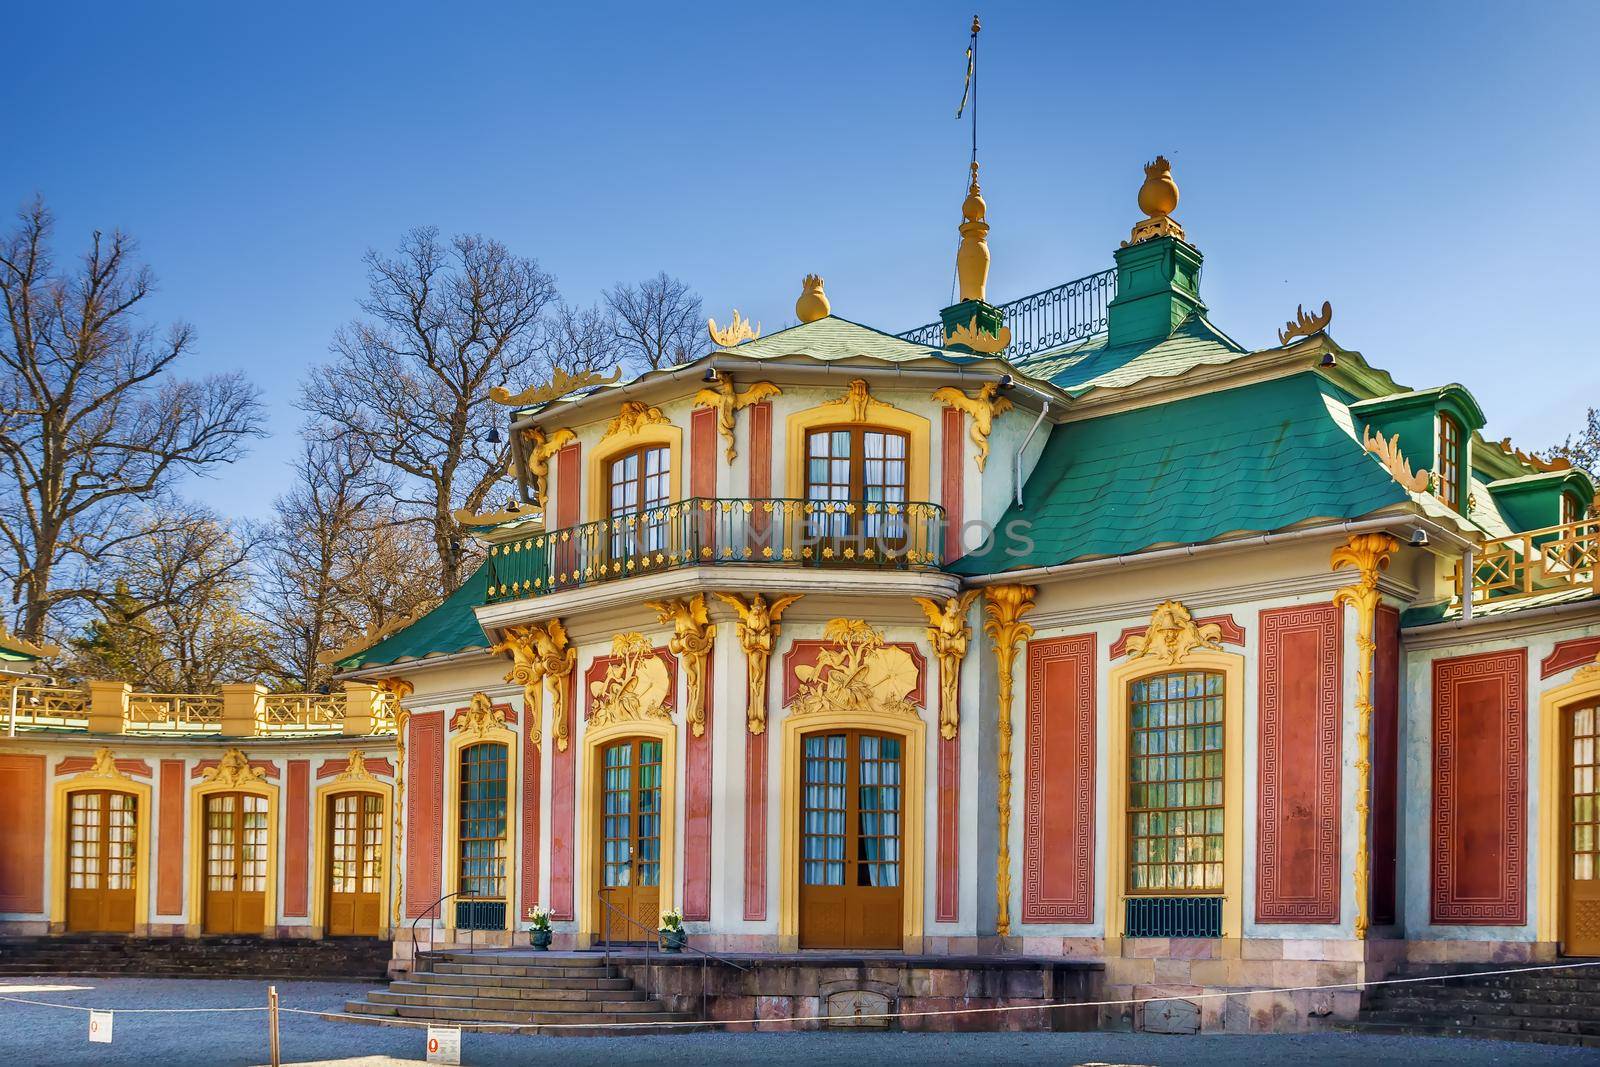 Chinese Pavilion at Drottningholm, Stockholm, Sweden by borisb17